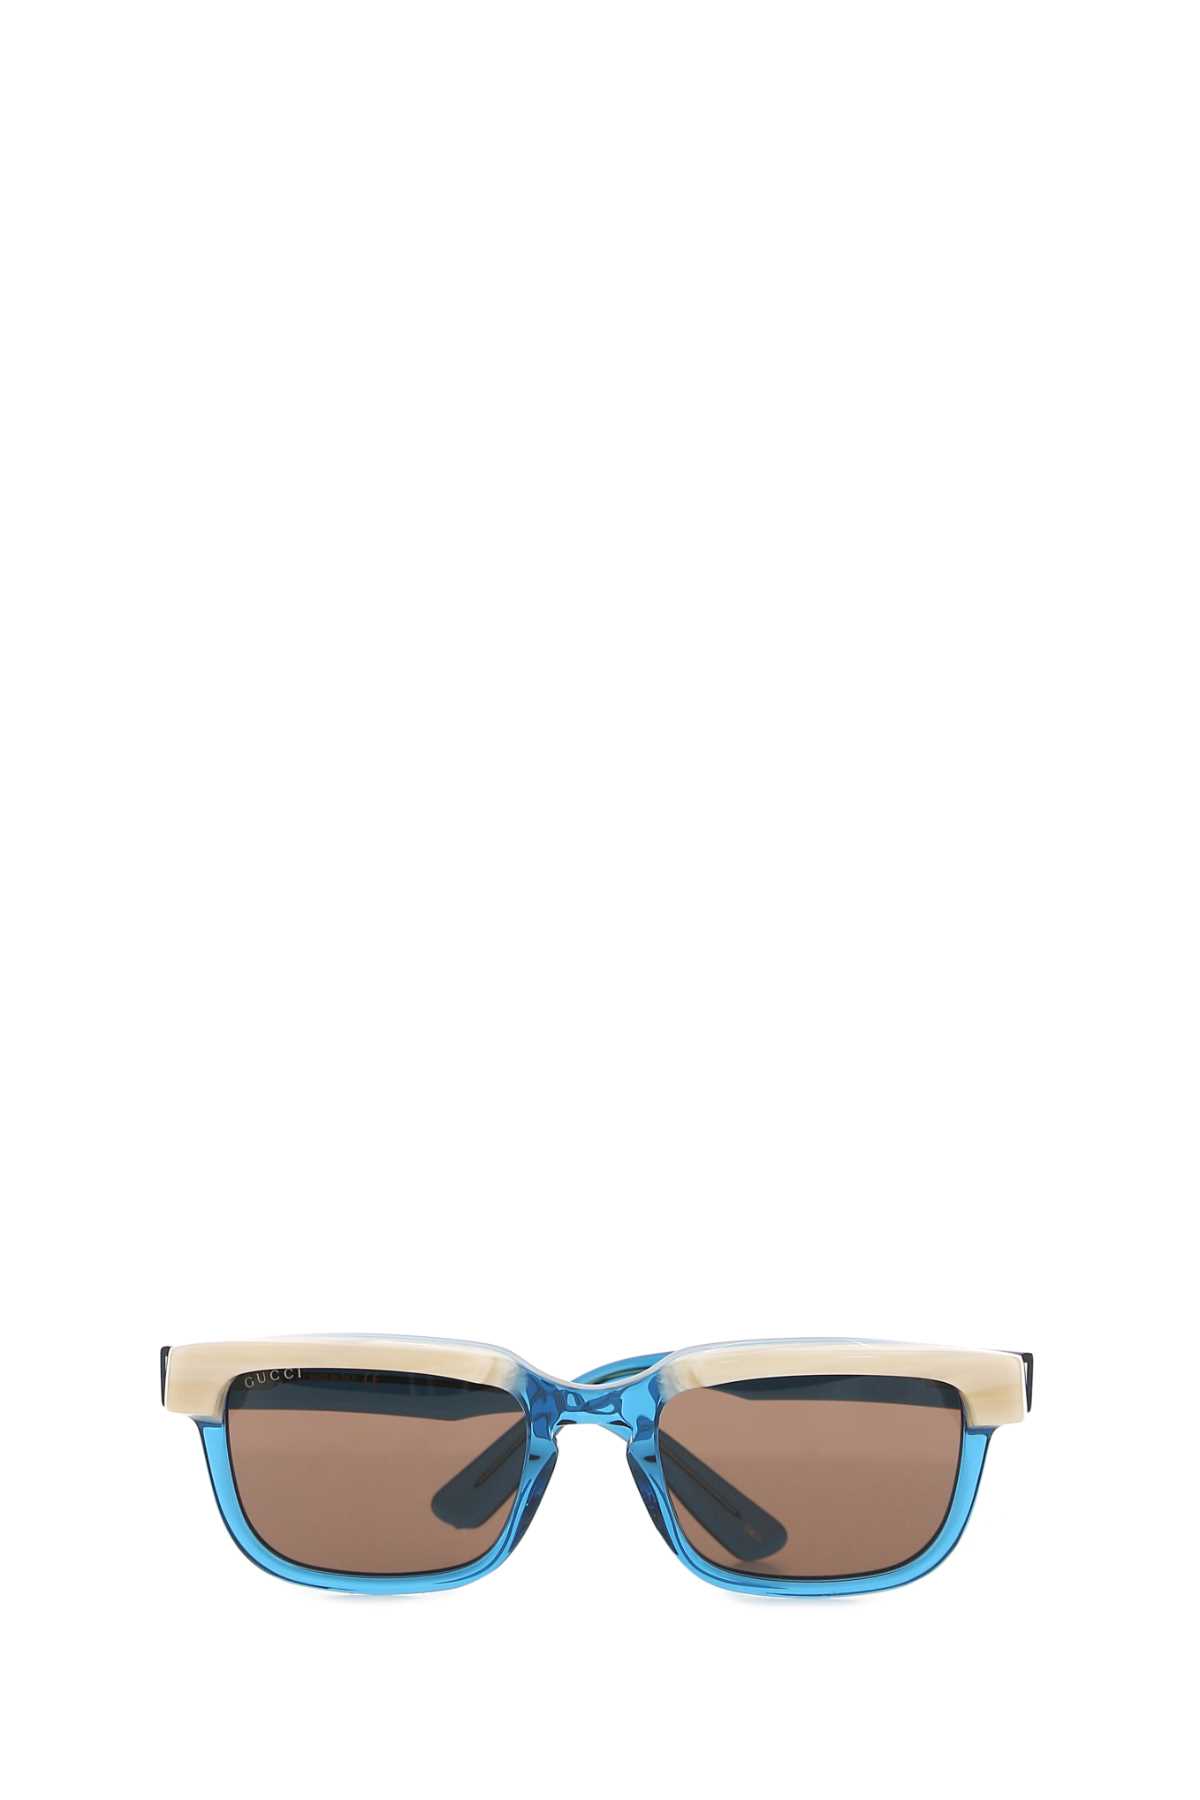 Shop Gucci Light Blue Acetate Sunglasses In 4623